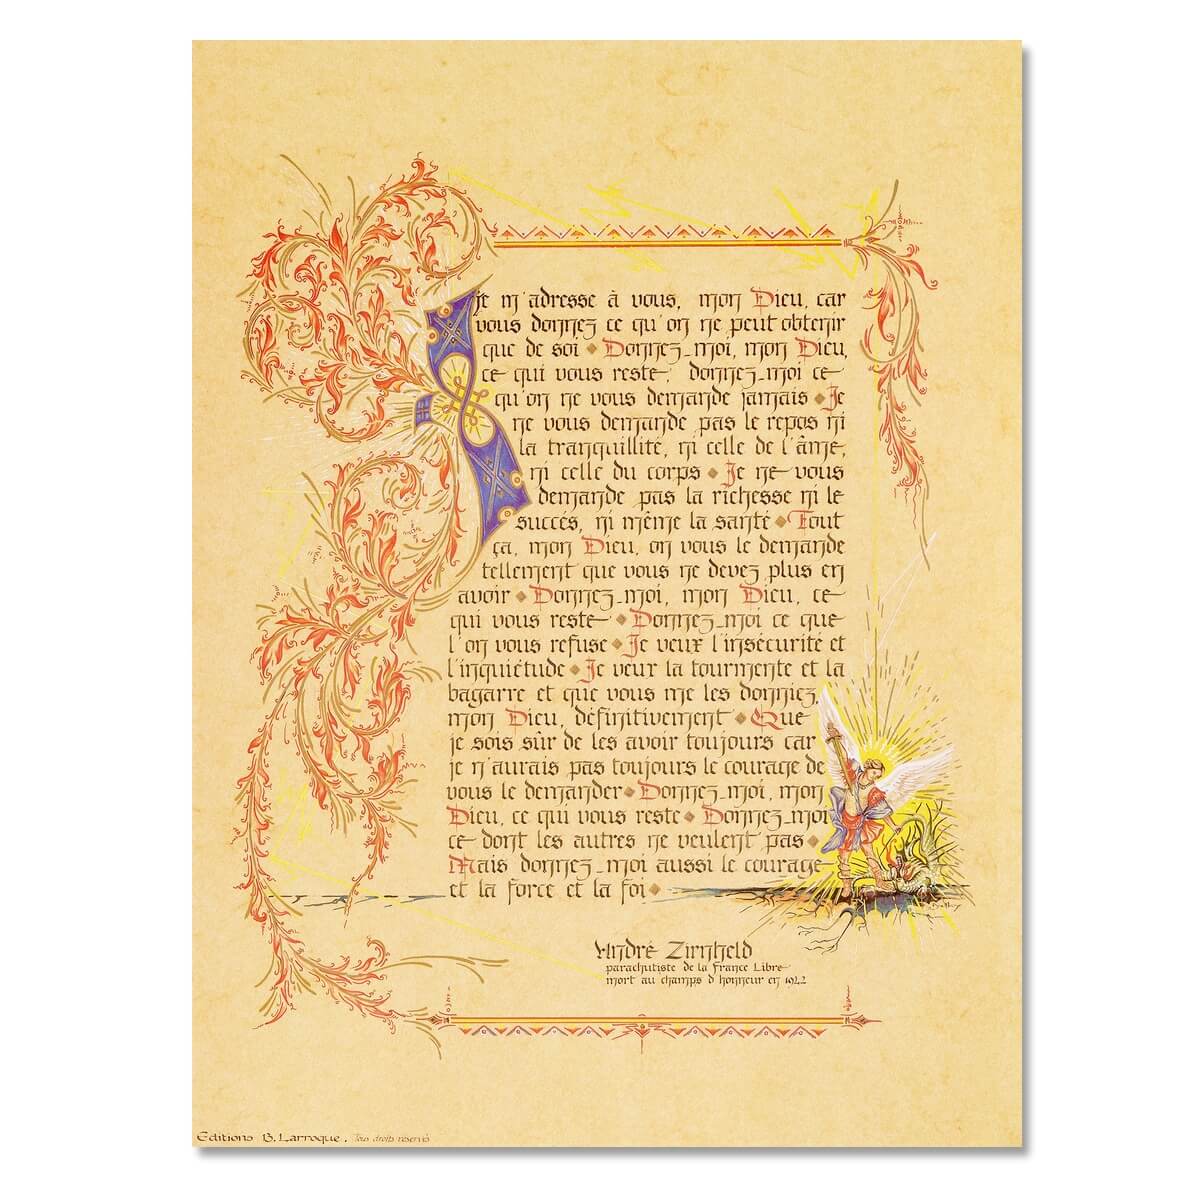 Texte calligraphie et illustré de la Prière des parachutiste d'André Zirnheld